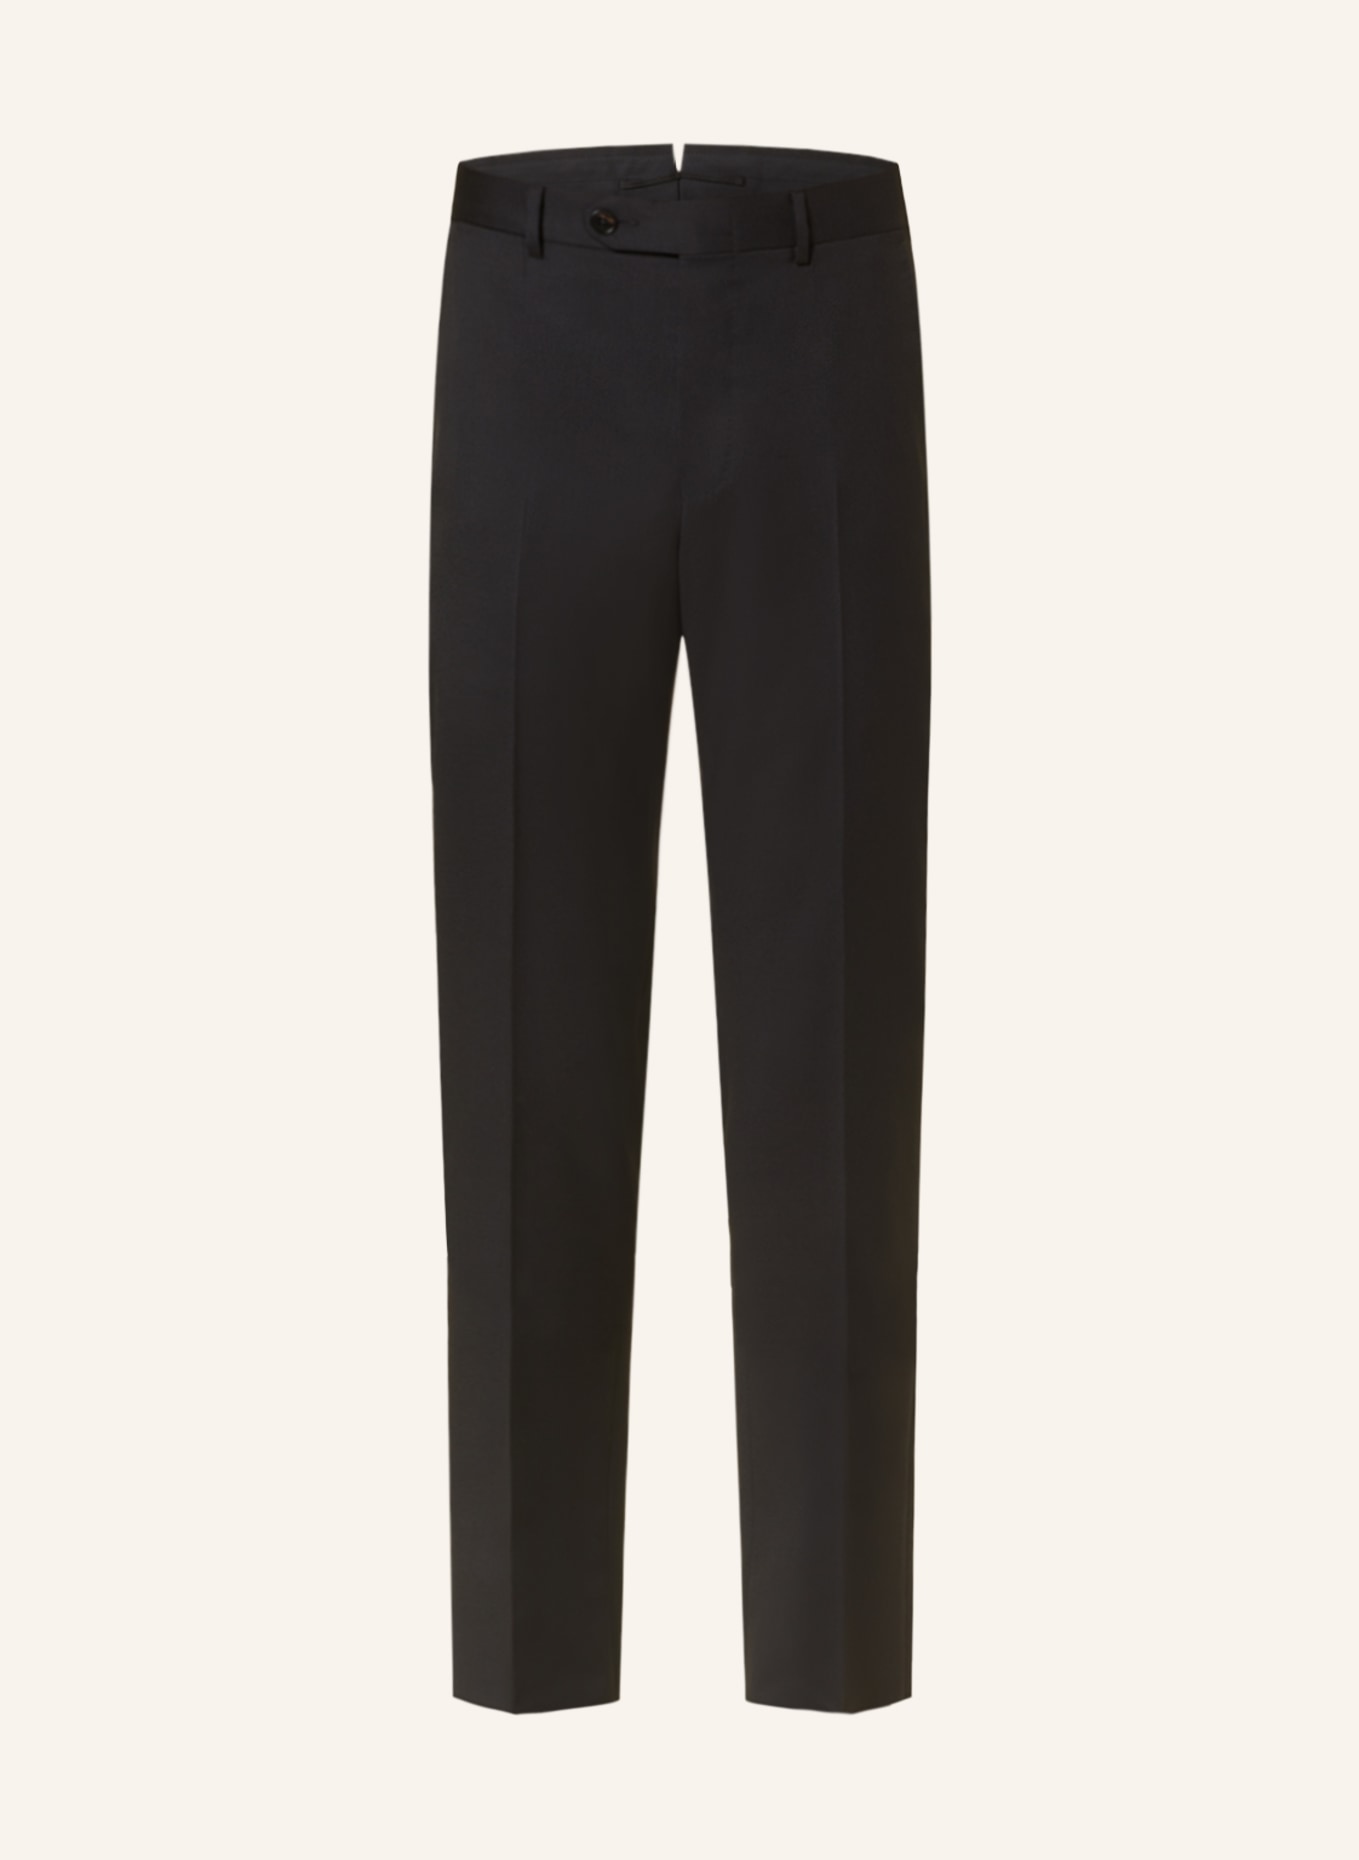 ZEGNA Suit trousers MILANO slim fit, Color: 525 BLACK (Image 1)